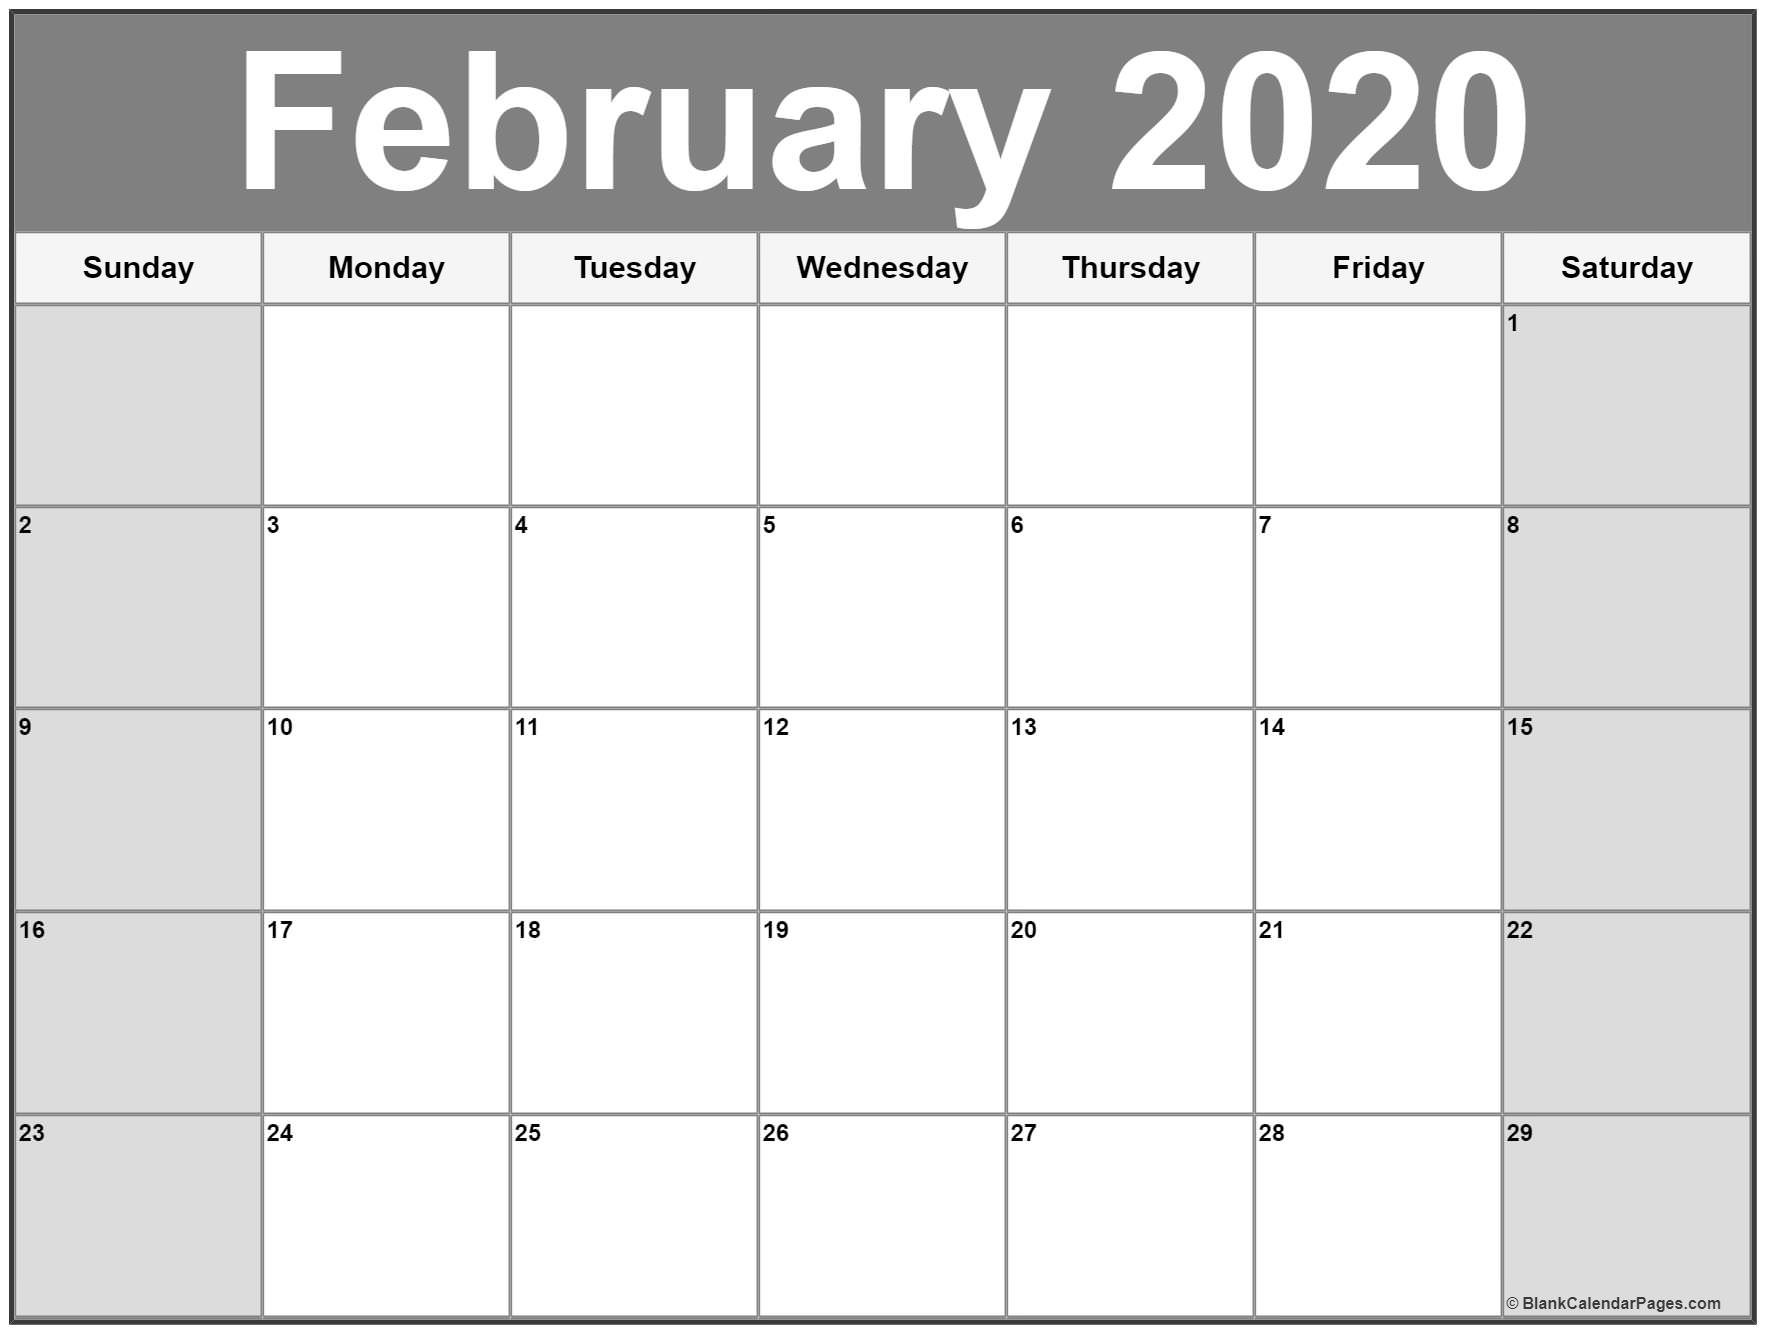 Free Printable February 2020 Calendar February 2020 Calendar